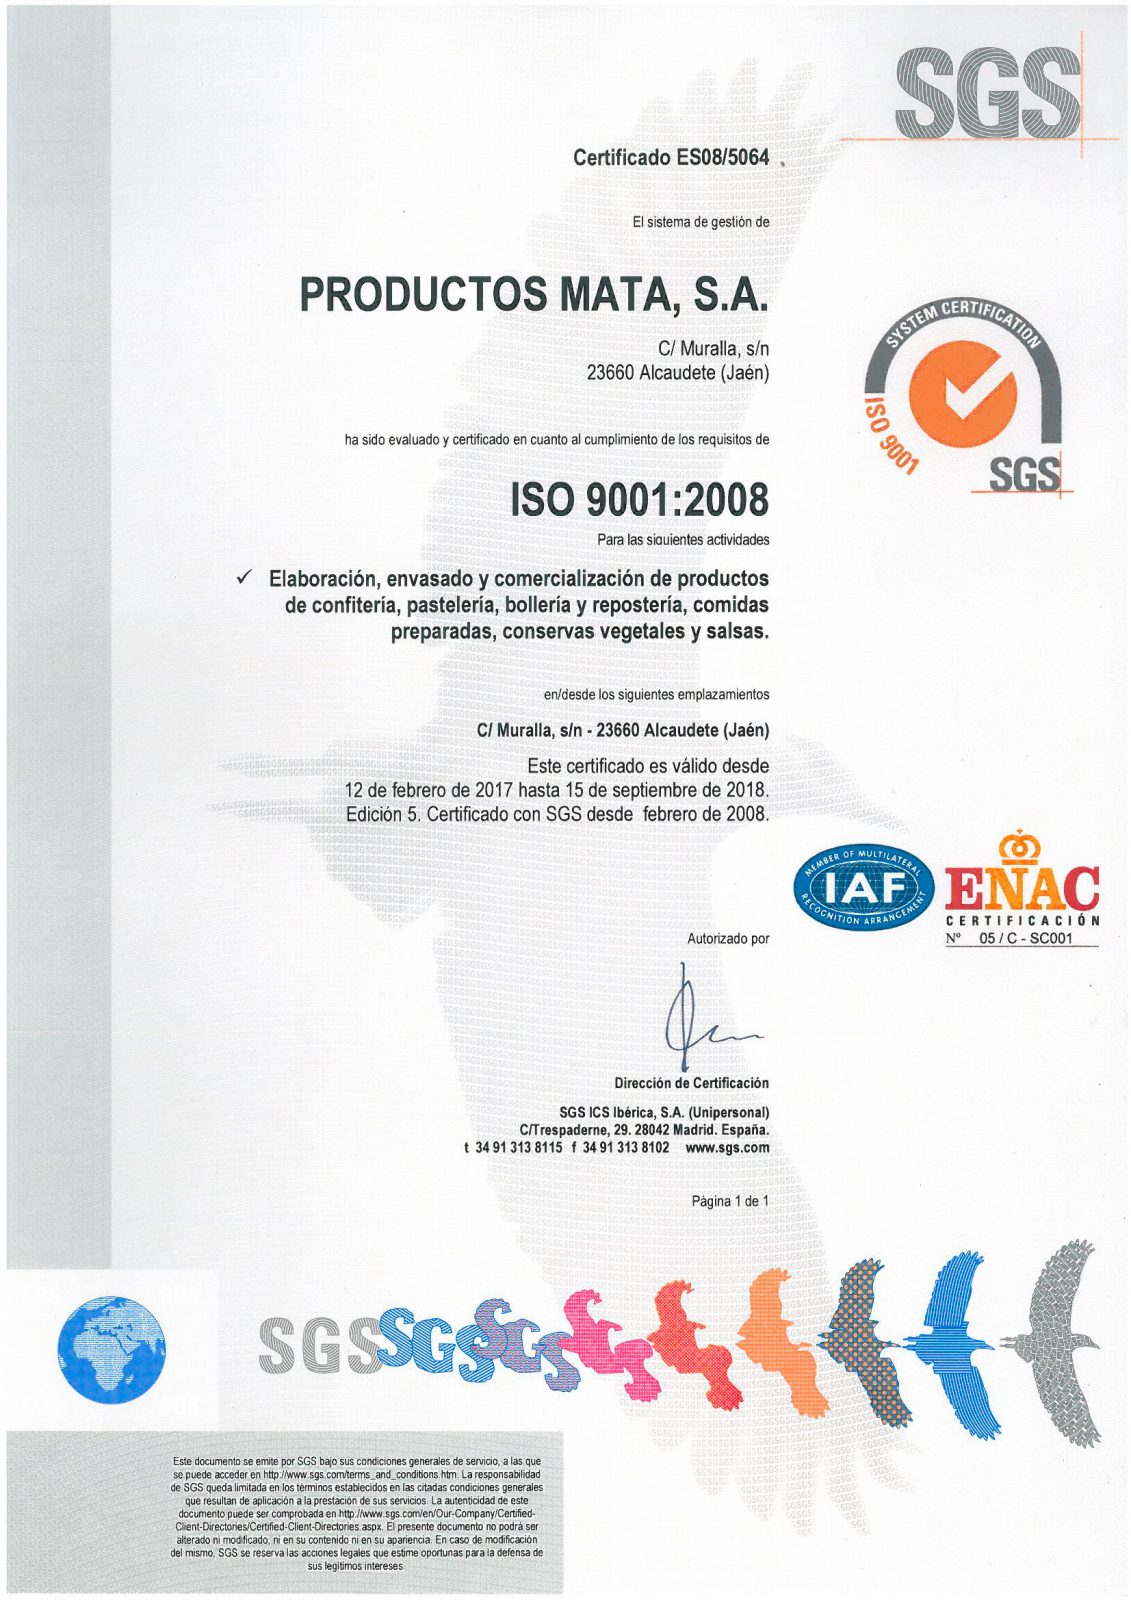 Renovado el certificado ISO 9001:2008 #ISO9001 @SGS_SA